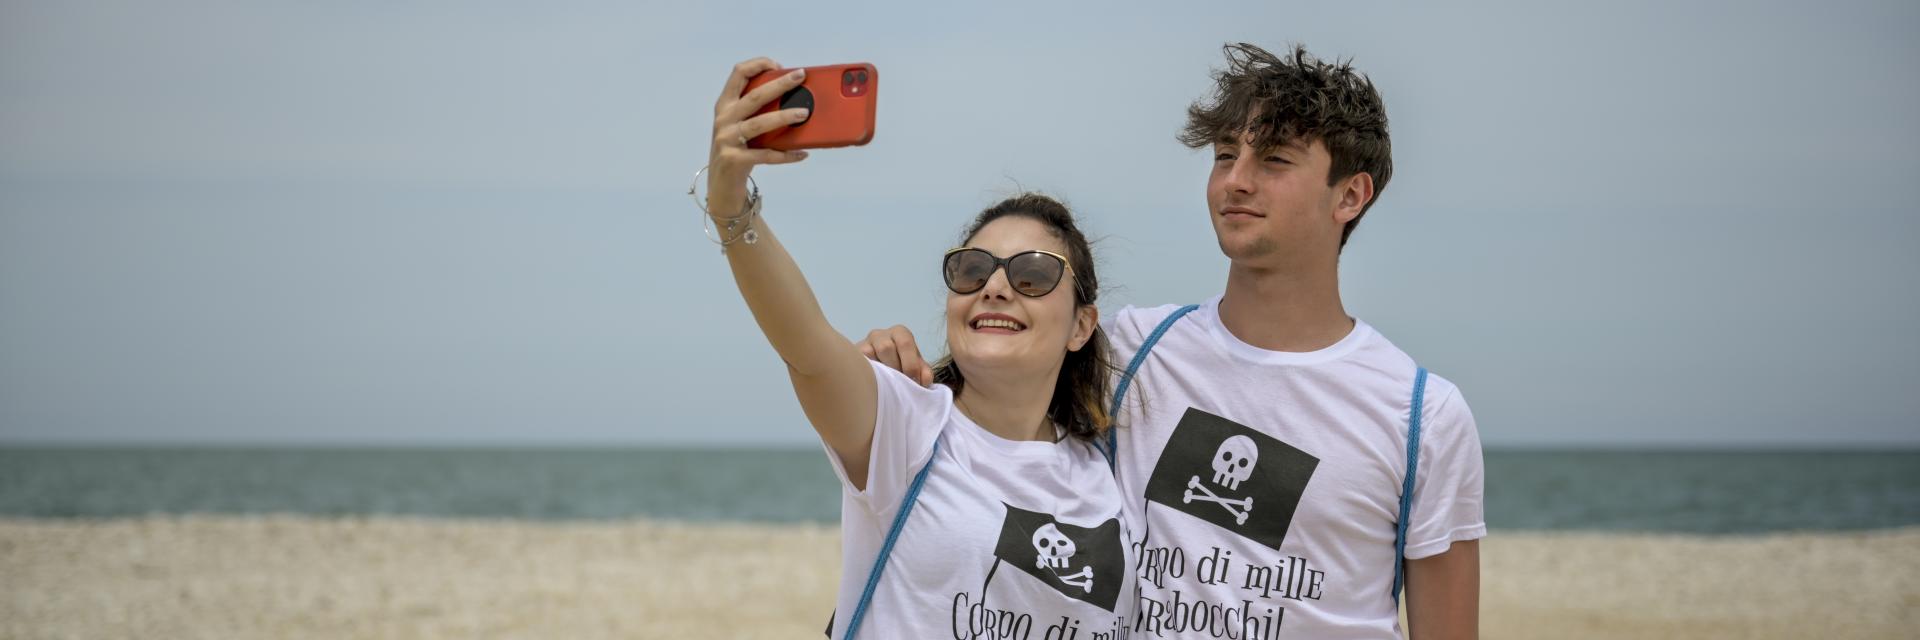 Coppia che si fa un selfie davanti al mare